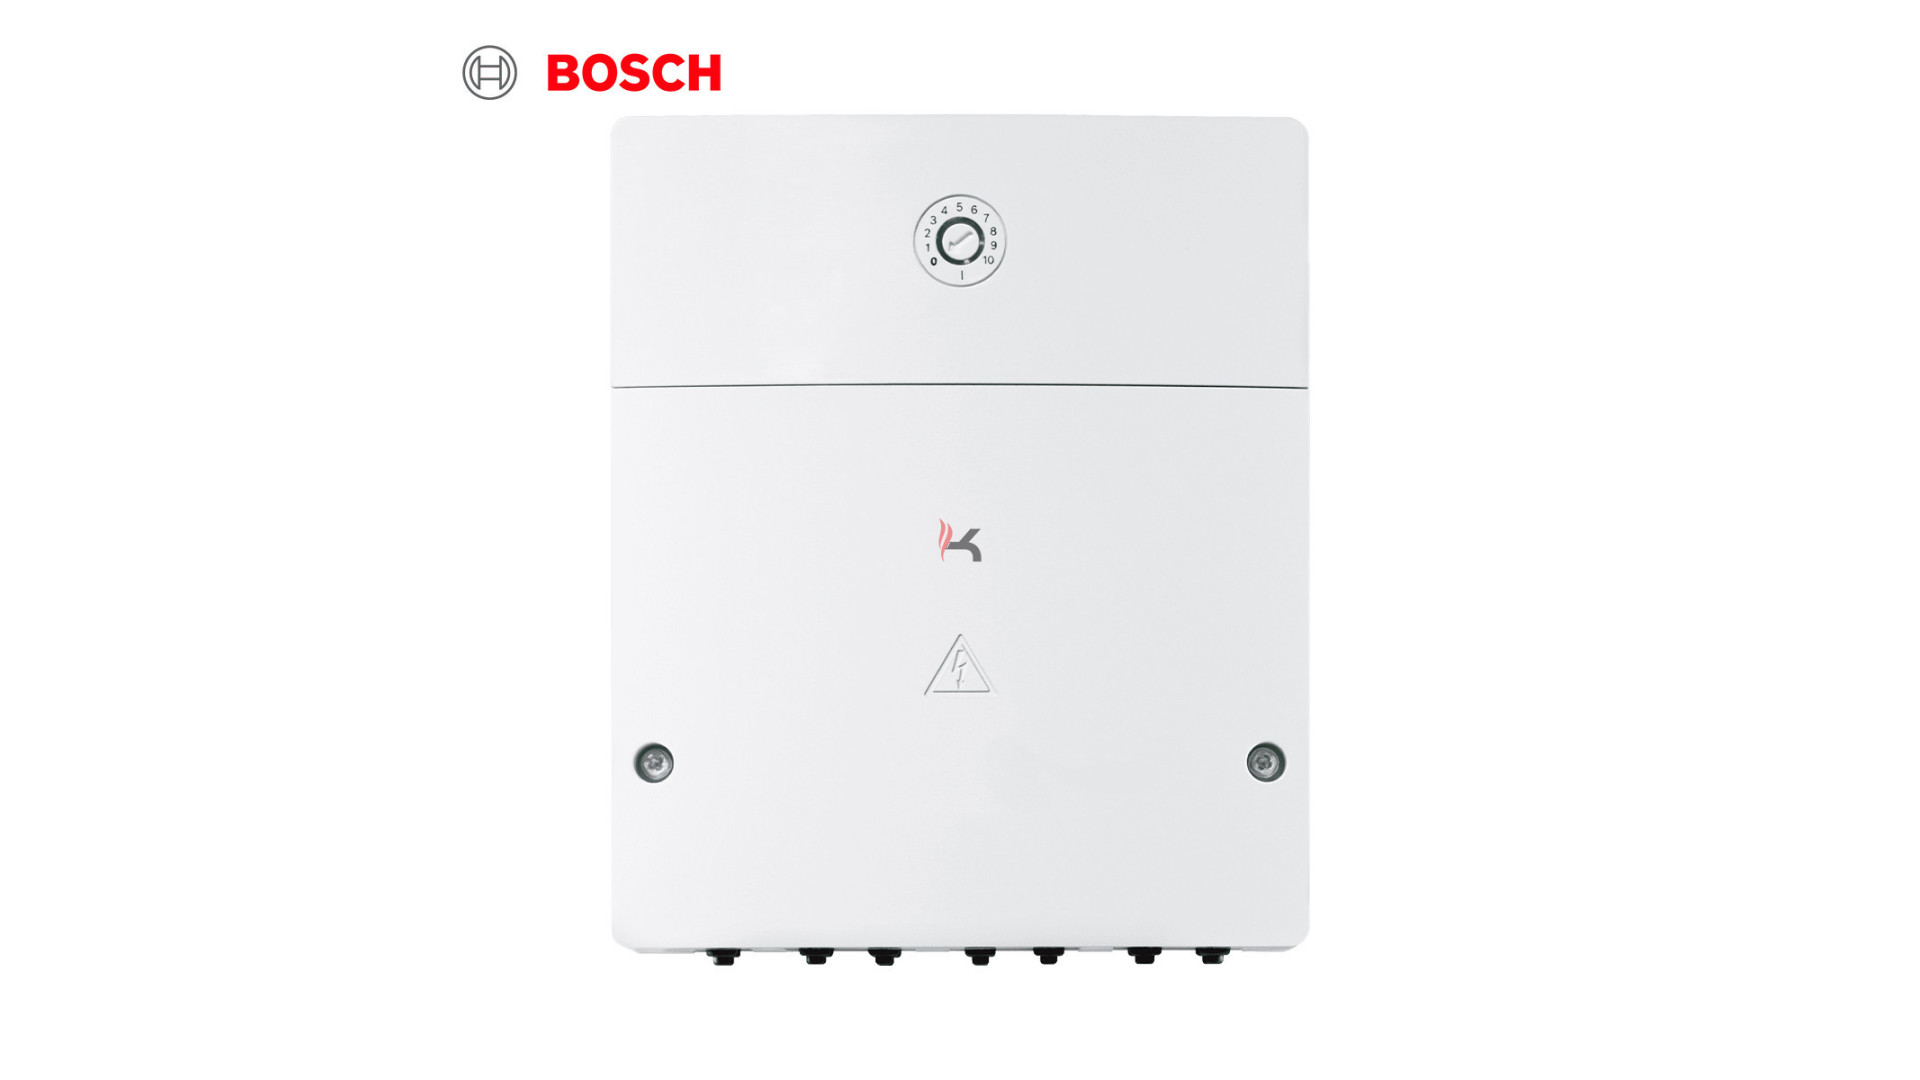 Bosch 7738110123.jpg